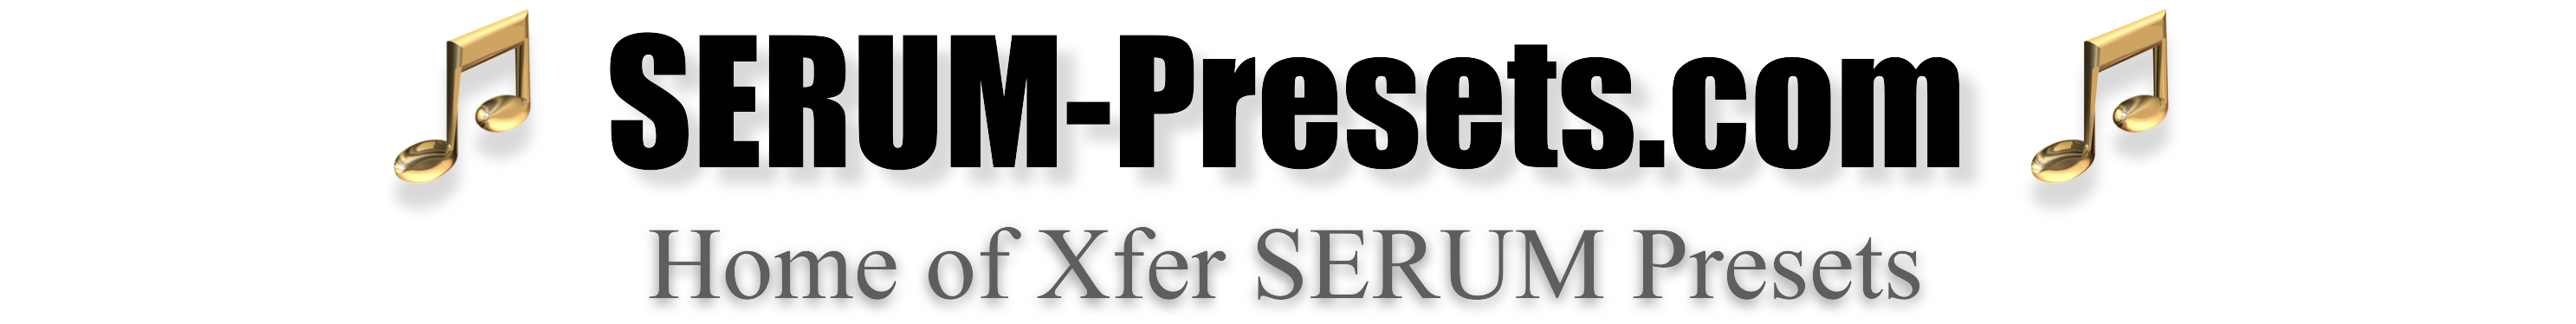 Serum-Presets.com Logo